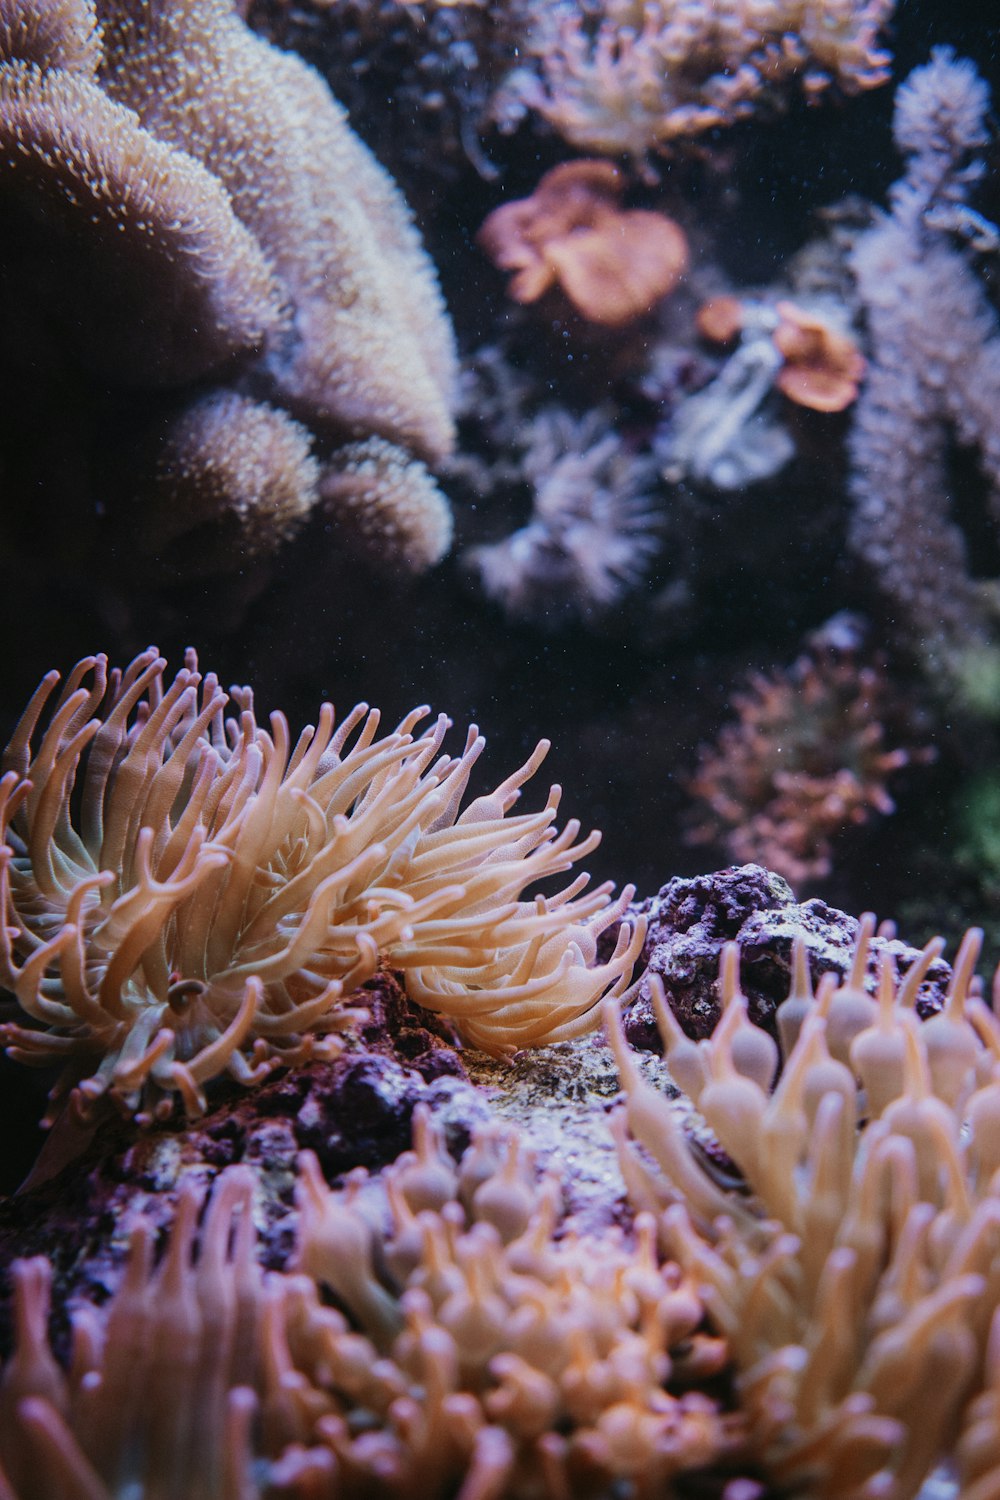 anemone and sea anemones in an aquarium